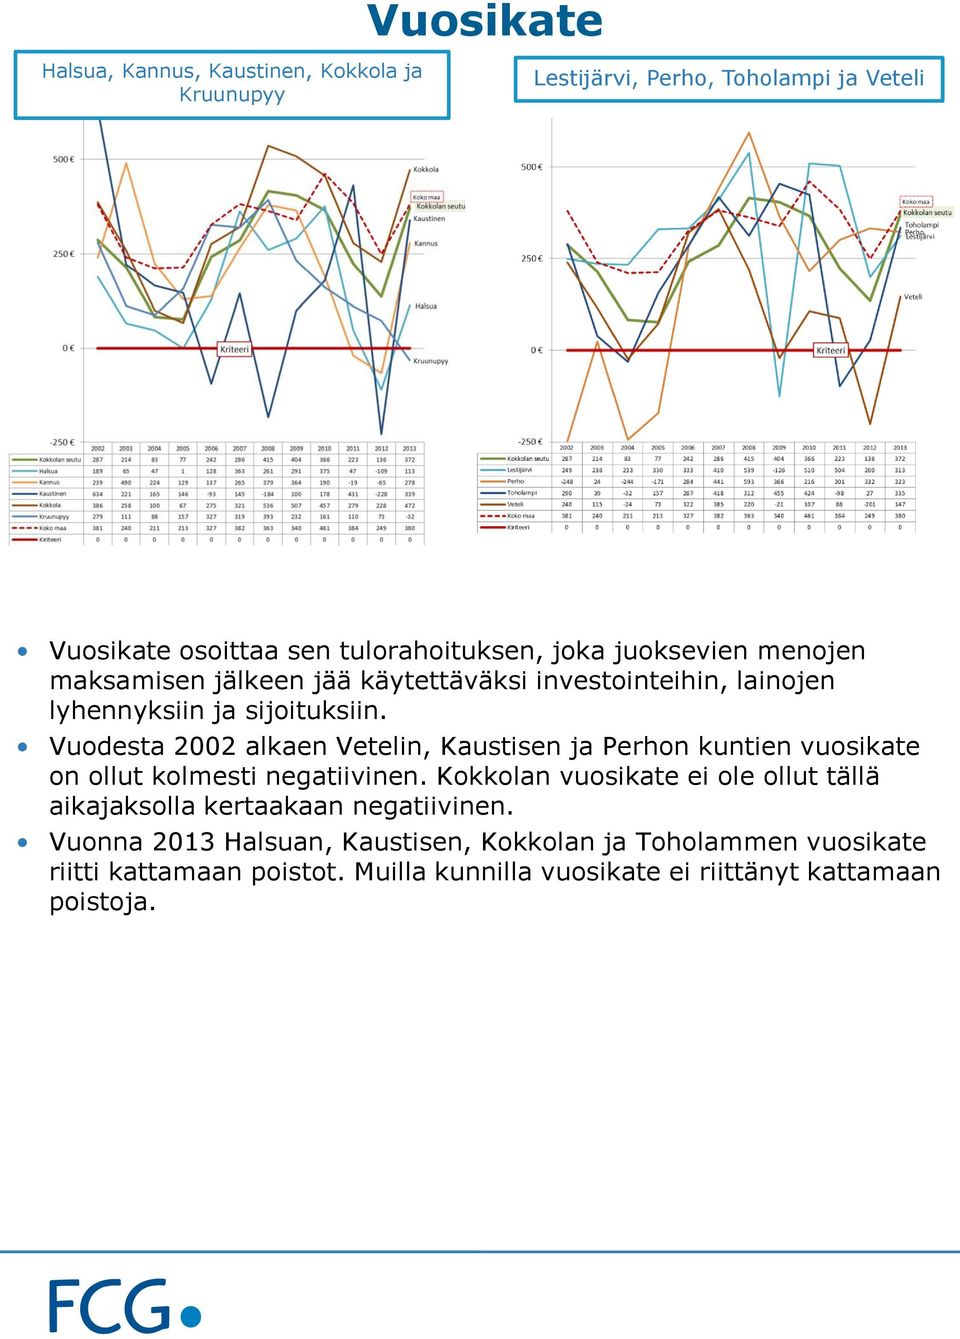 Vuodesta 2002 alkaen Vetelin, Kaustisen ja Perhon kuntien vuosikate on ollut kolmesti negatiivinen.